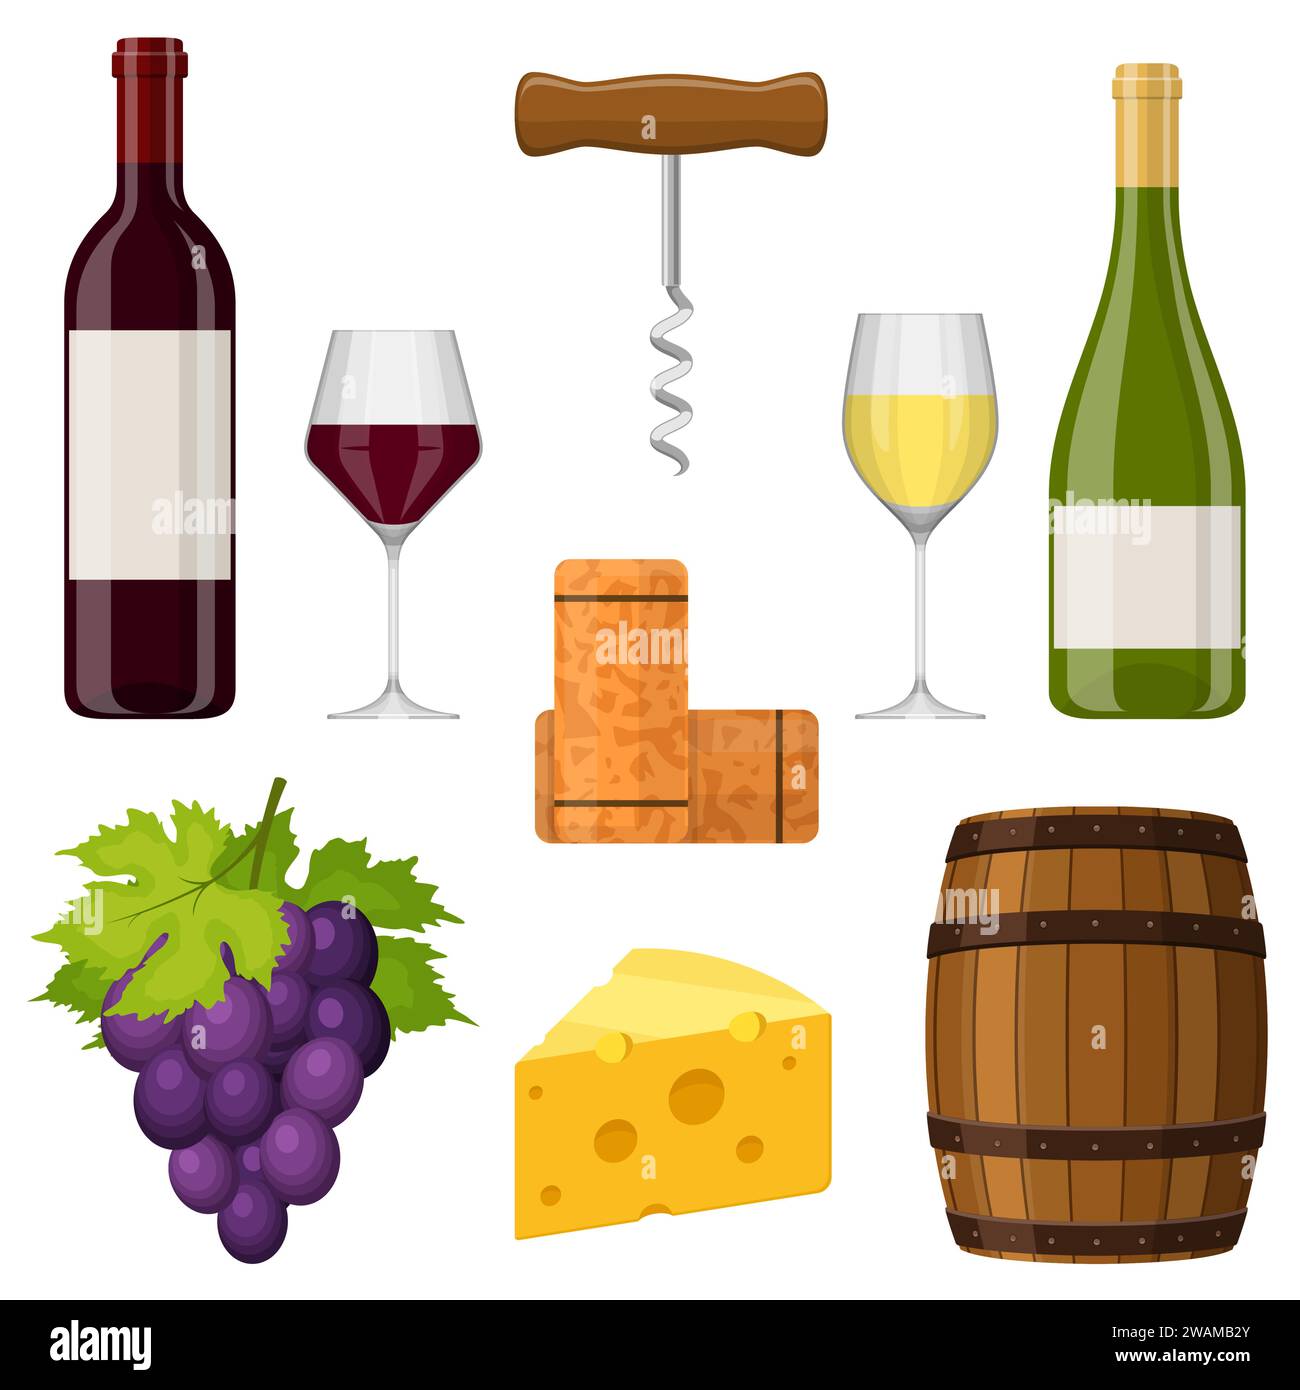 Elementi di design vettoriale del set di vini su sfondo bianco. Bottiglia di vino, bicchiere di vino, formaggio, cavatappi, sughero, uva e botte. Vinificazione in piano. VEC Illustrazione Vettoriale